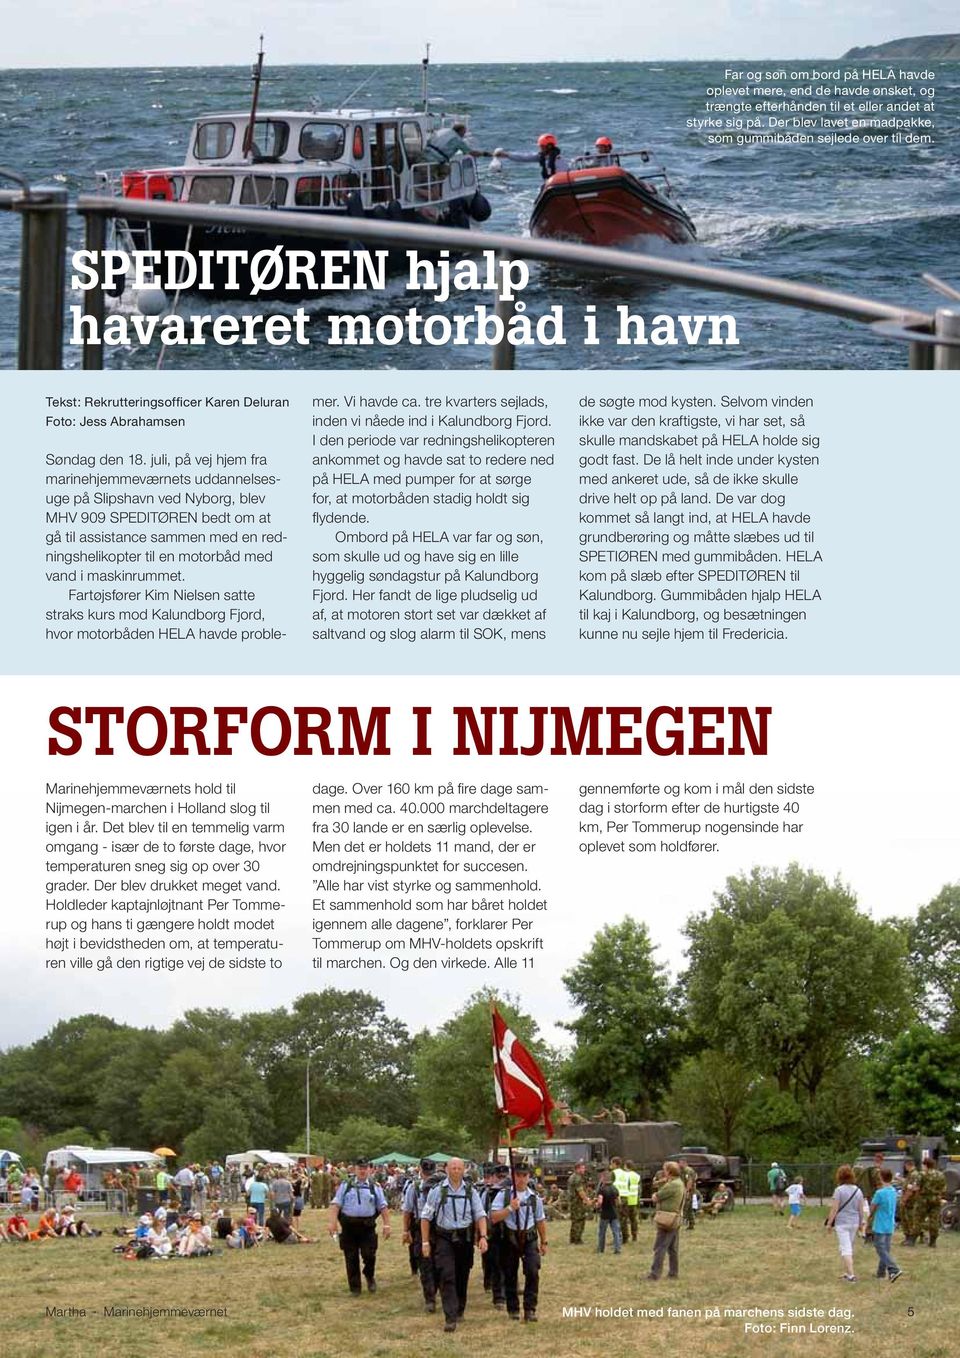 juli, på vej hjem fra marinehjemmeværnets uddannelsesuge på Slipshavn ved Nyborg, blev MHV 909 SPEDITØREN bedt om at gå til assistance sammen med en redningshelikopter til en motorbåd med vand i